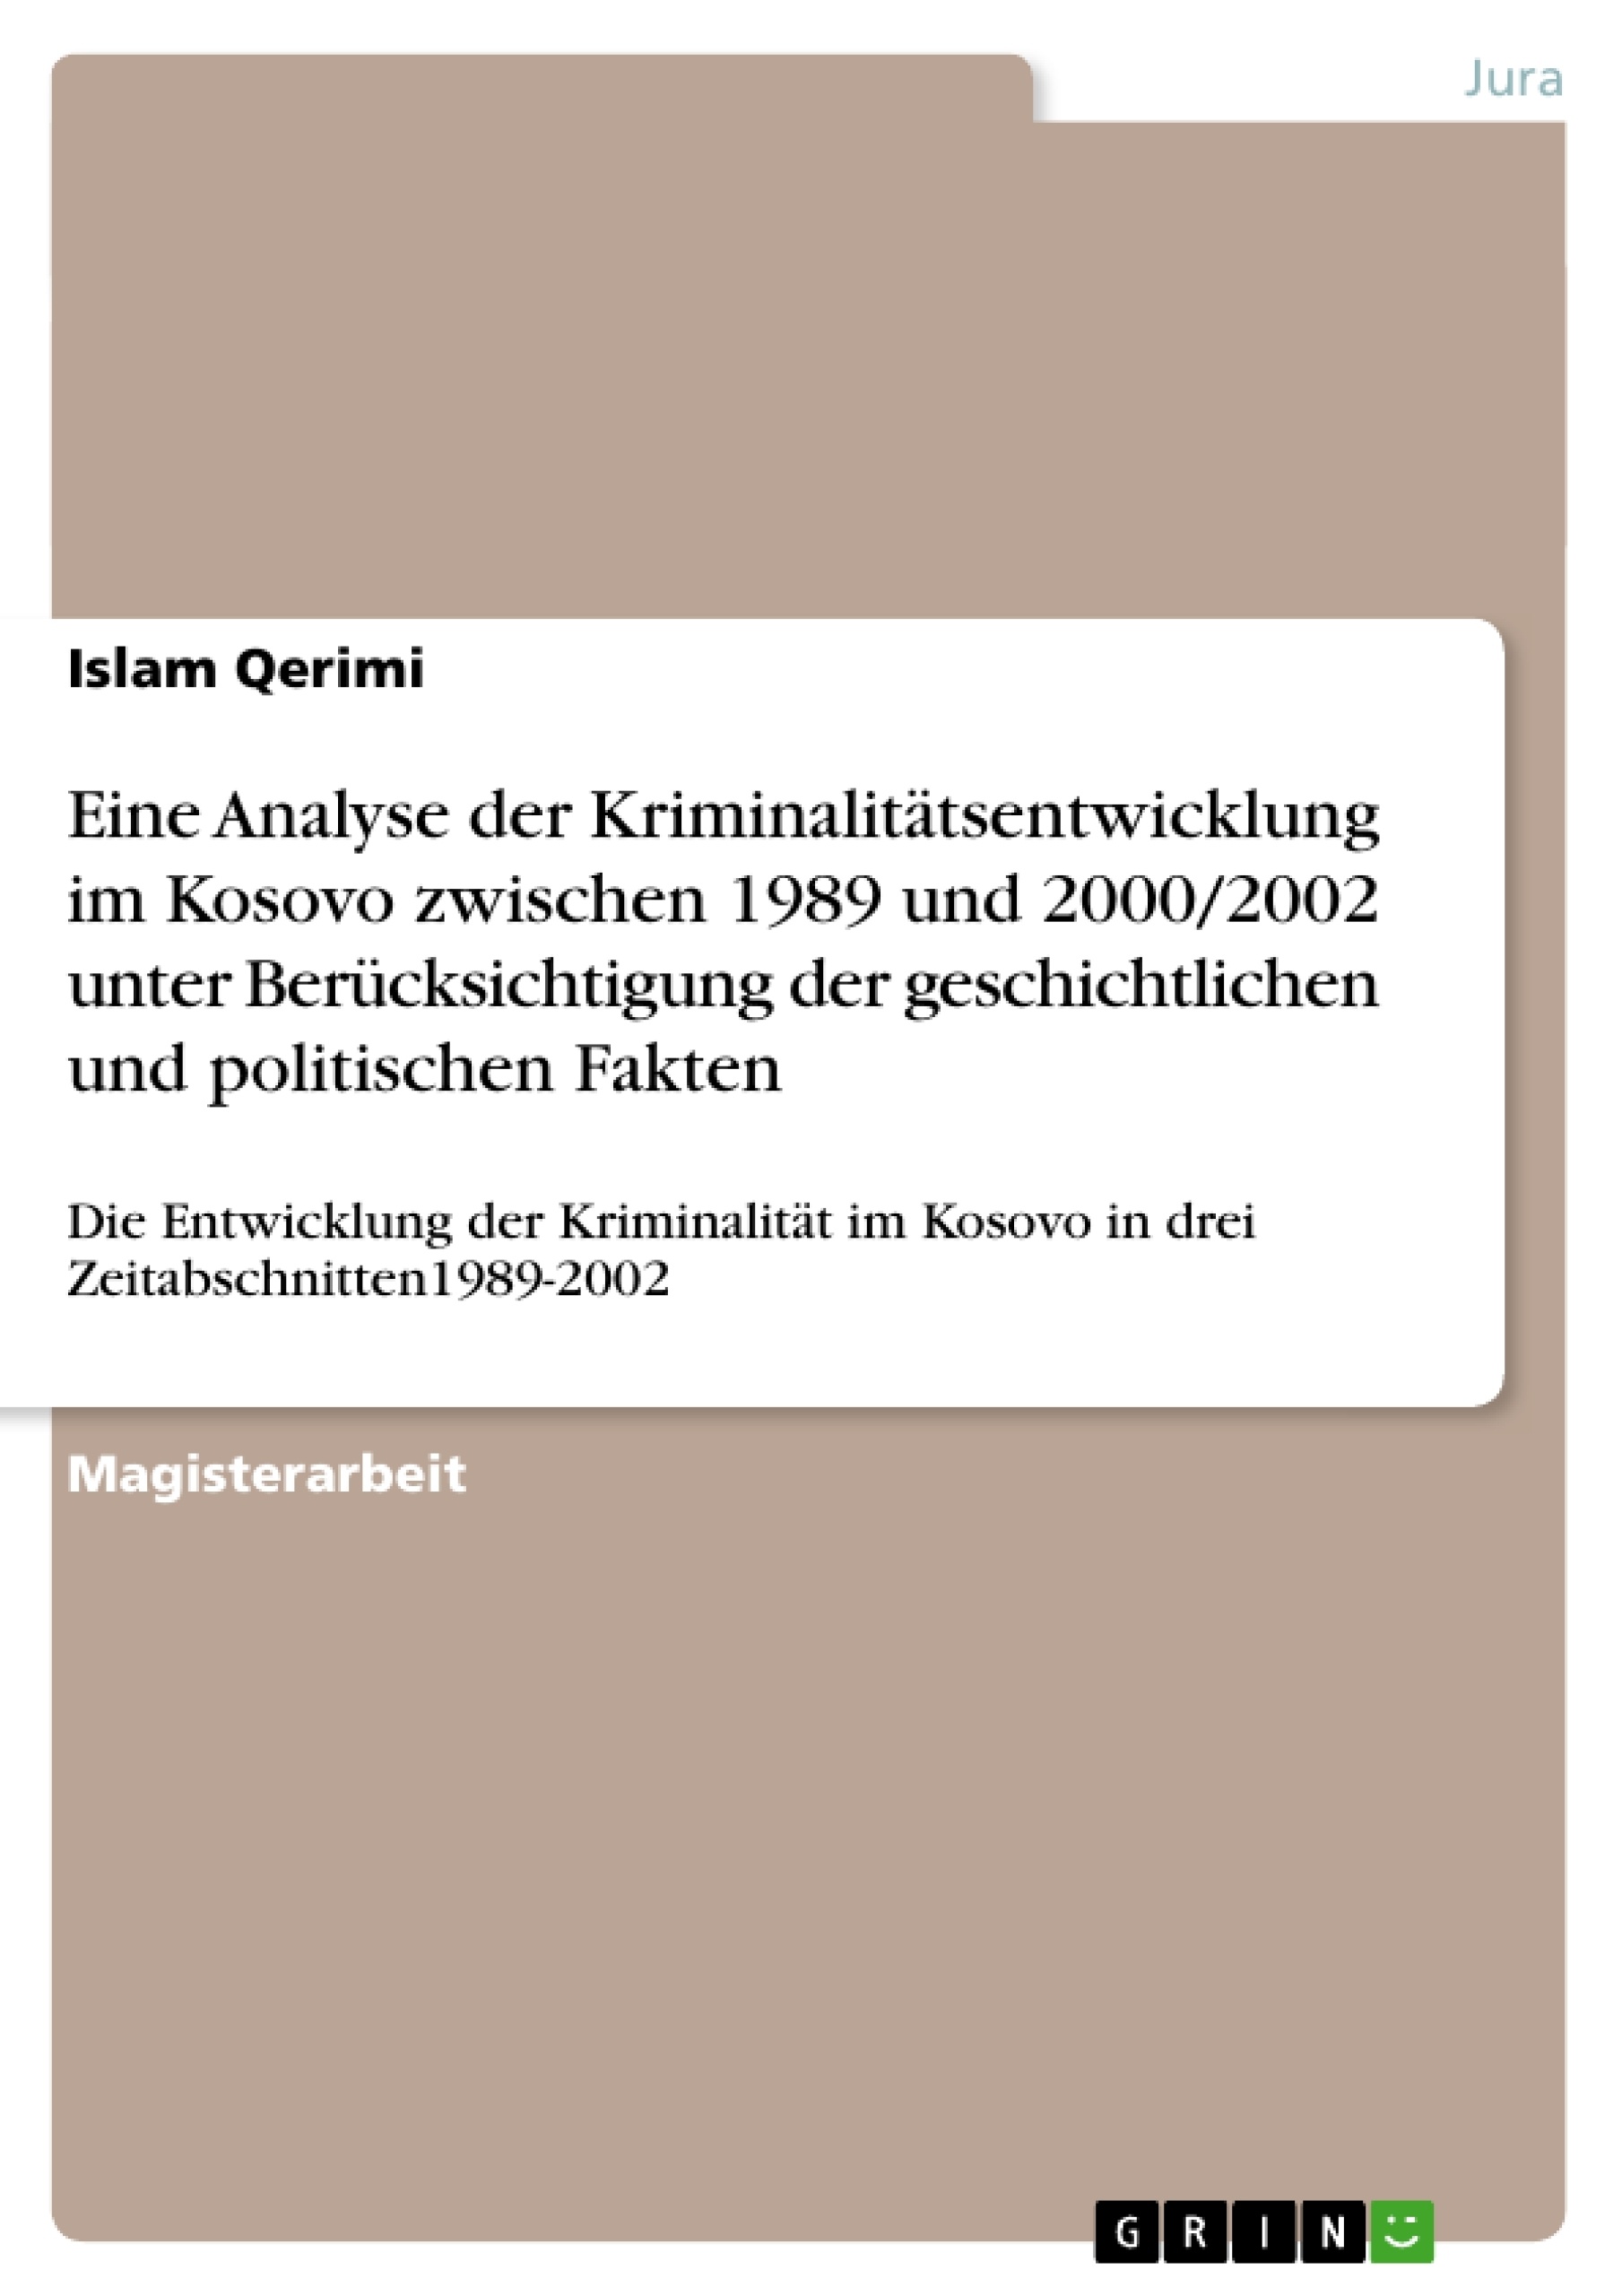 Titre: Eine  Analyse der Kriminalitätsentwicklung im Kosovo zwischen 1989 und 2000/2002 unter Berücksichtigung der geschichtlichen und politischen Fakten 